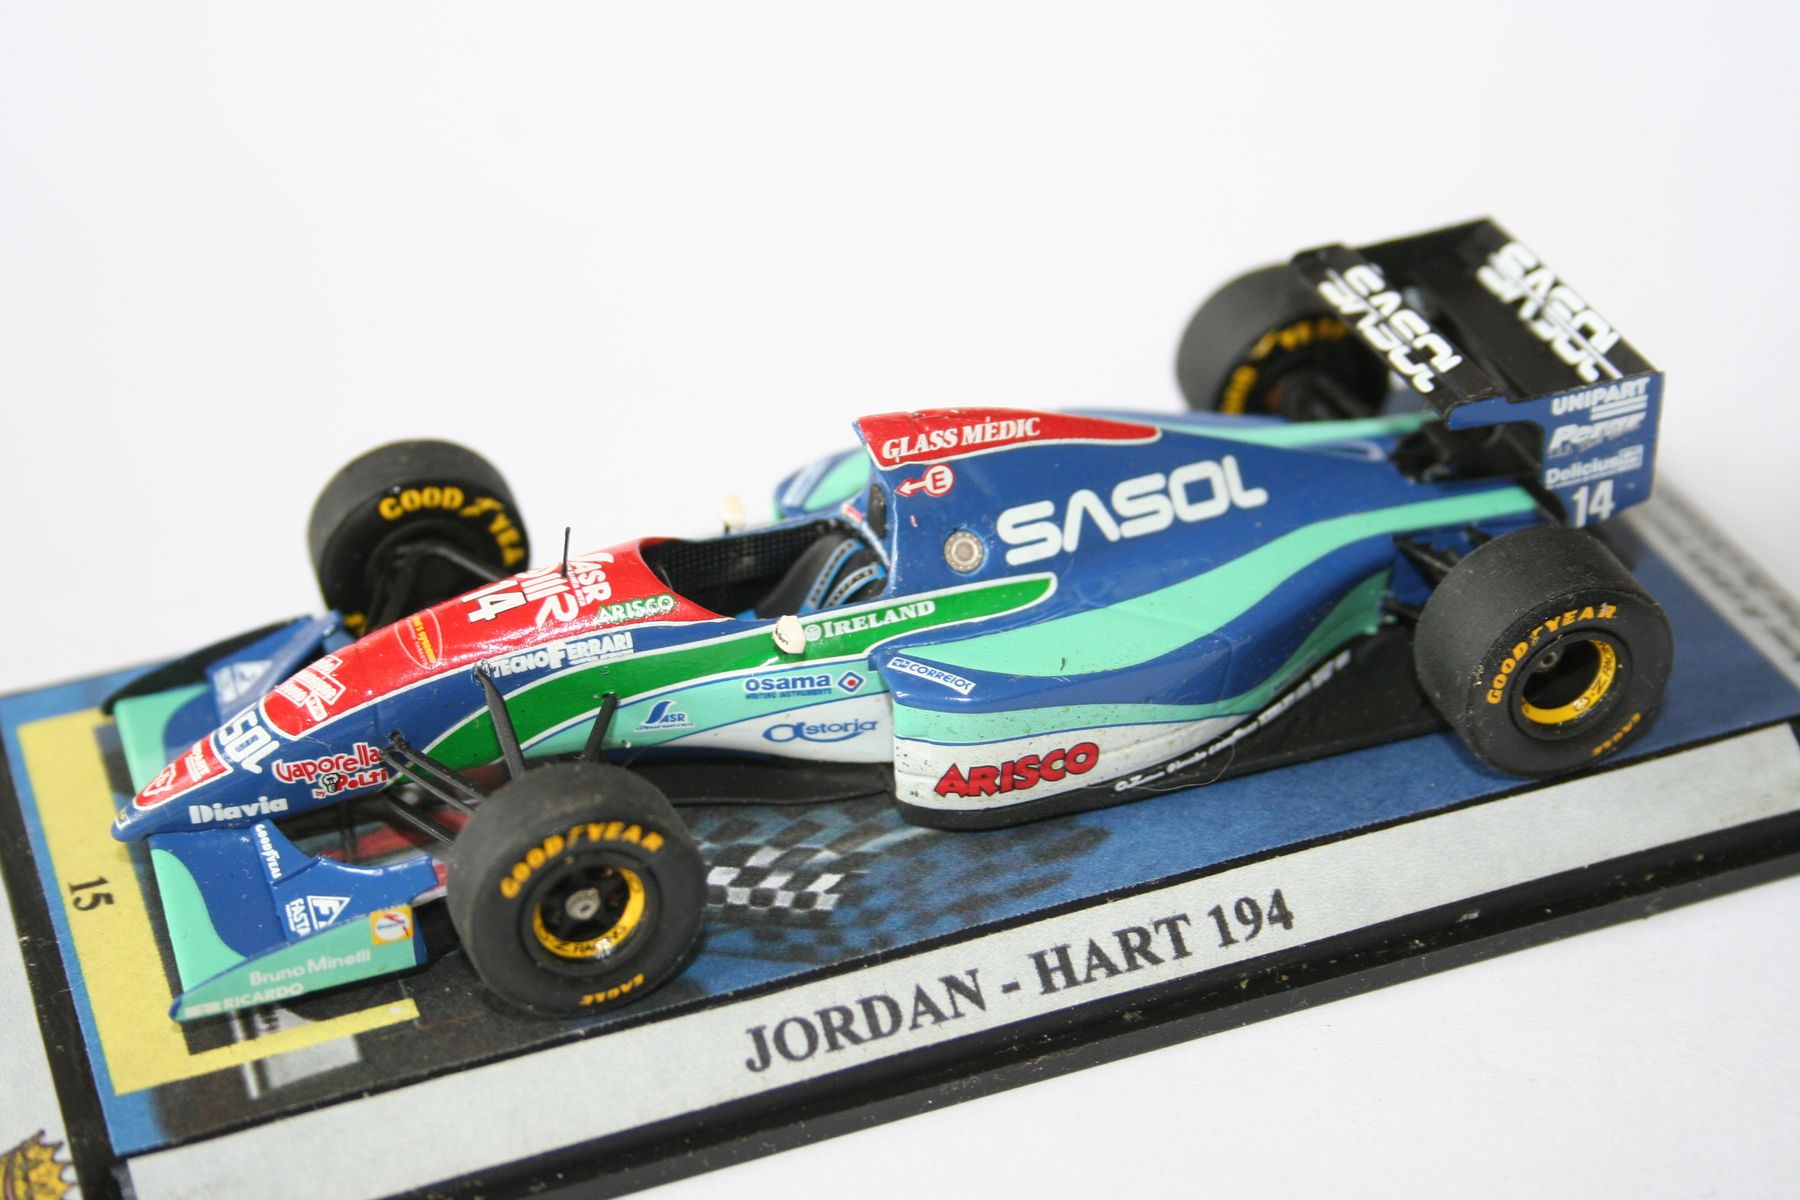 Fongu's GP4 cars & F1 model reviews: 1/43 Model Review: 1994 Jordan 194